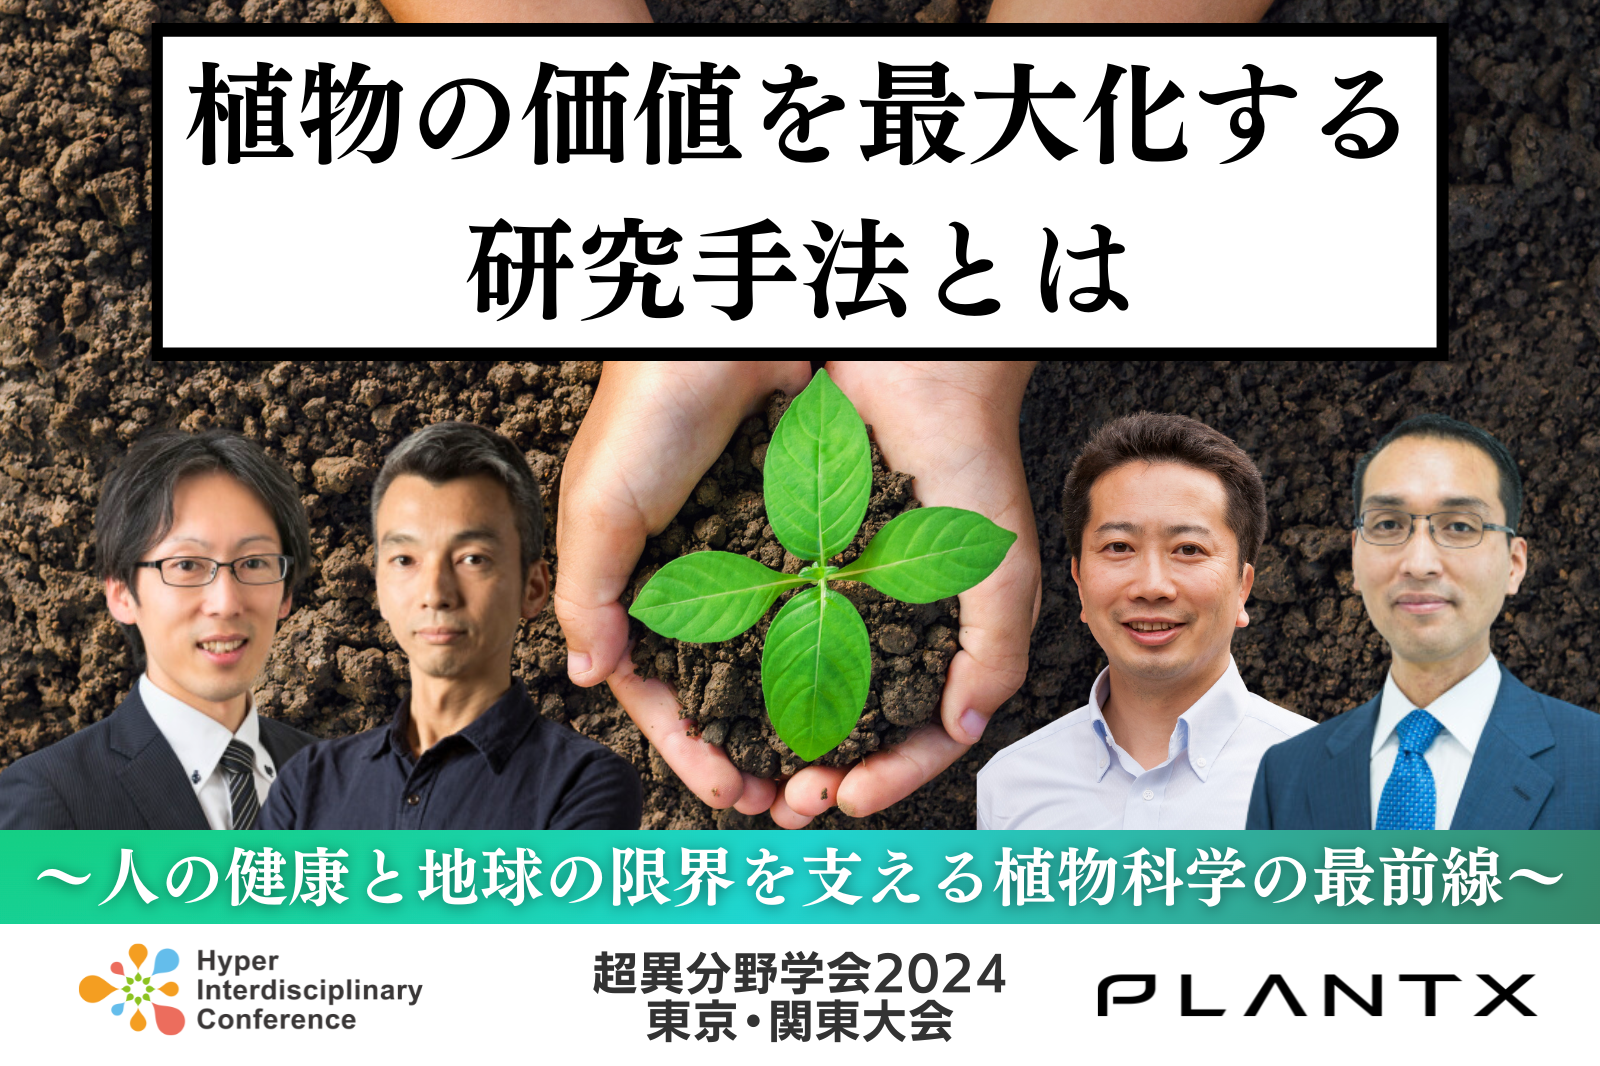 【セッション d1a2】
植物の価値を最大化する研究手法とは 〜人の健康と地球の限界を支える植物科学の最前線〜